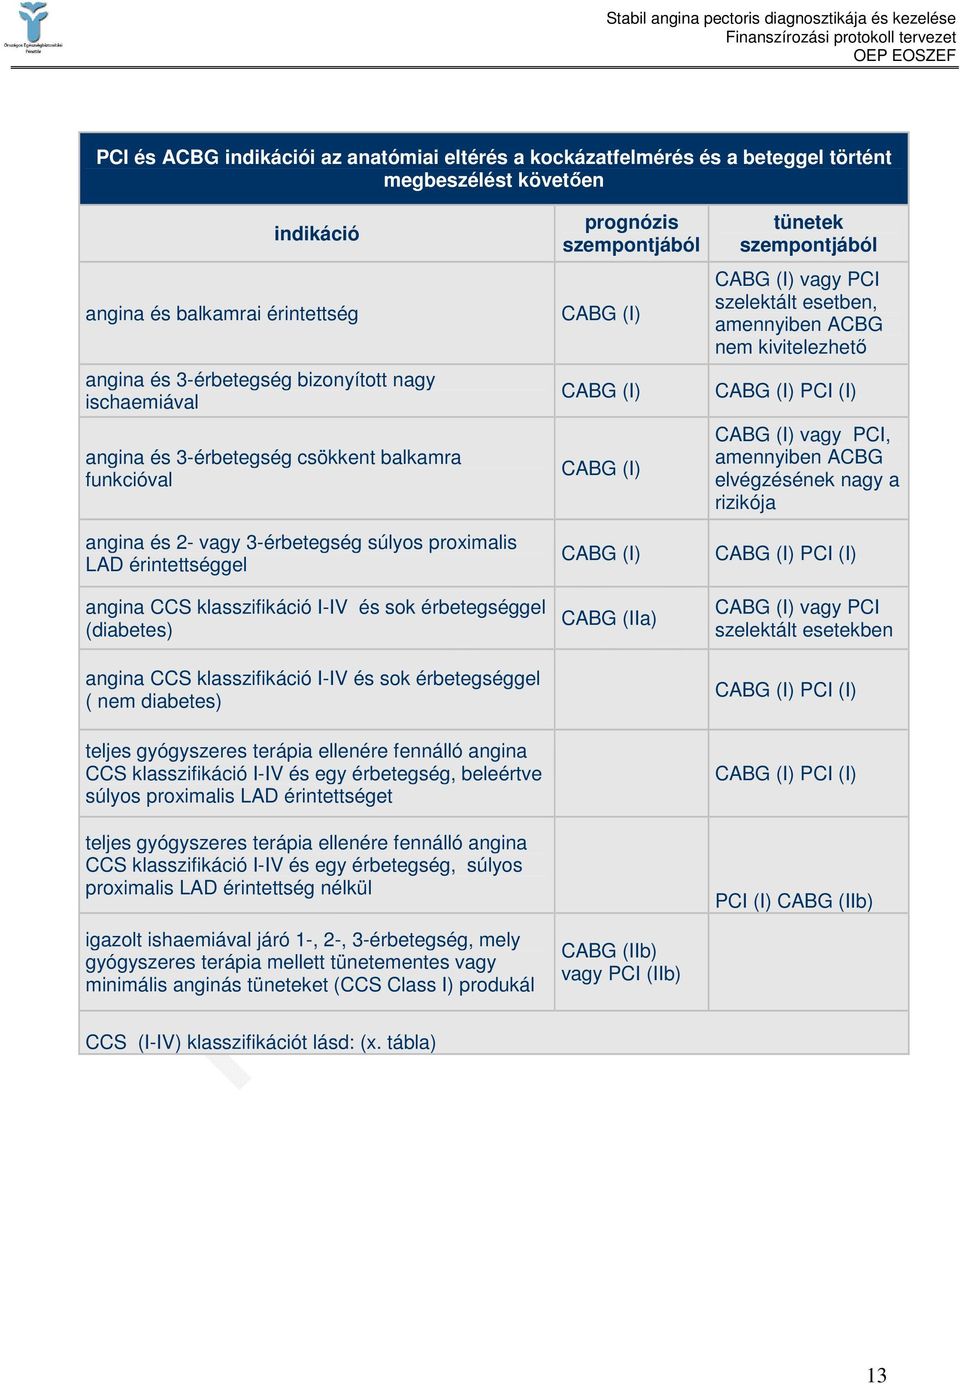 kivitelezhetı CABG (I) PCI (I) CABG (I) vagy PCI, amennyiben ACBG elvégzésének nagy a rizikója angina és 2- vagy 3-érbetegség súlyos proximalis LAD érintettséggel angina CCS klasszifikáció I-IV és